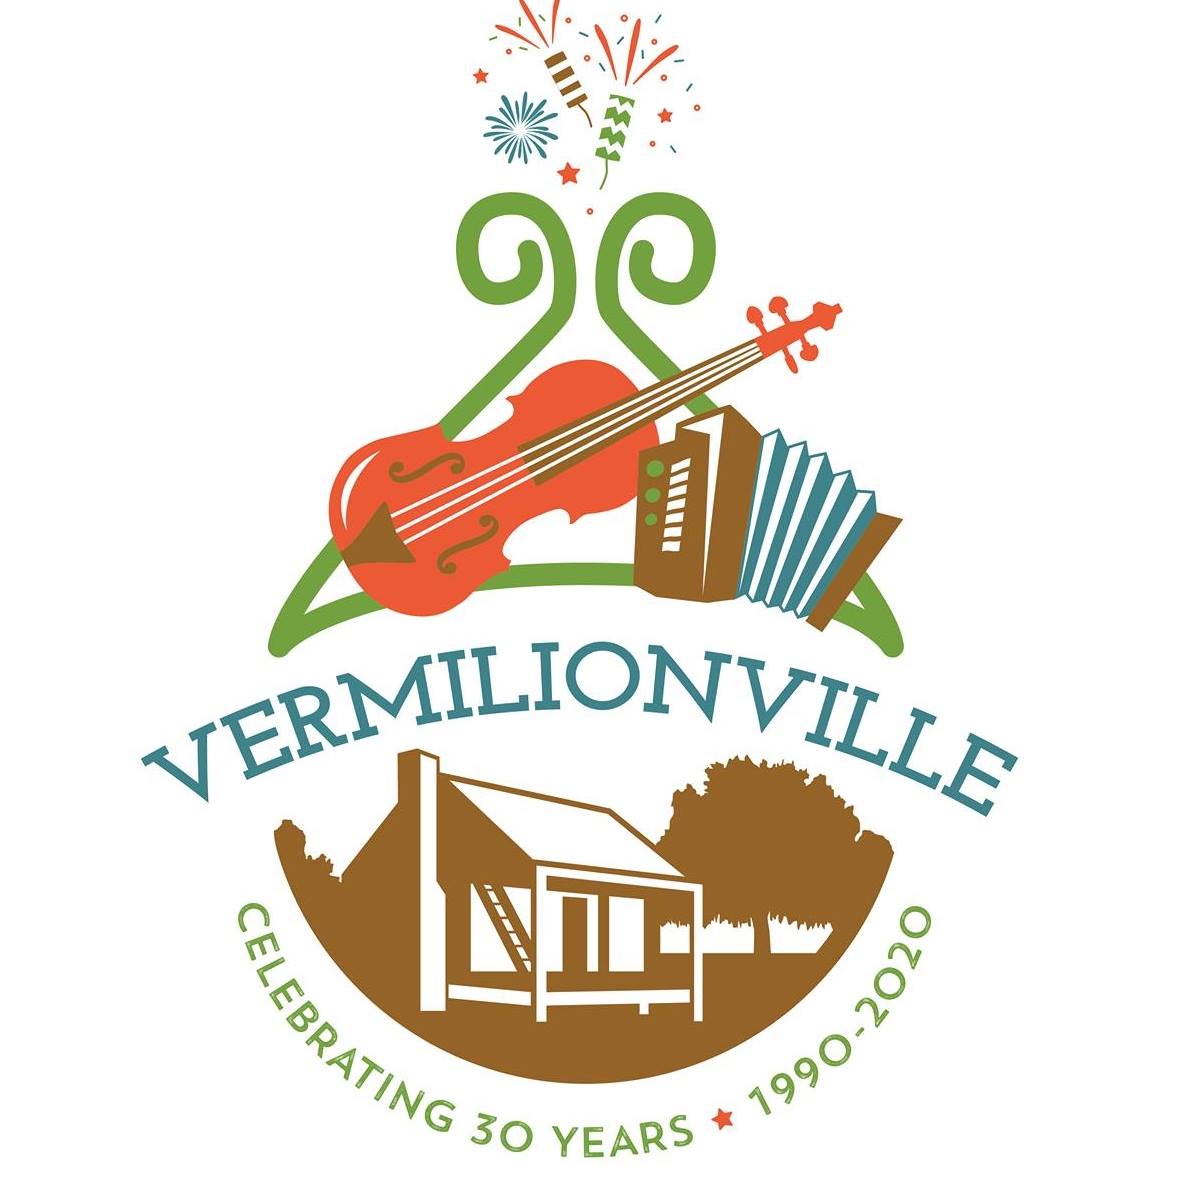 Vermilionville Historic Village Facts